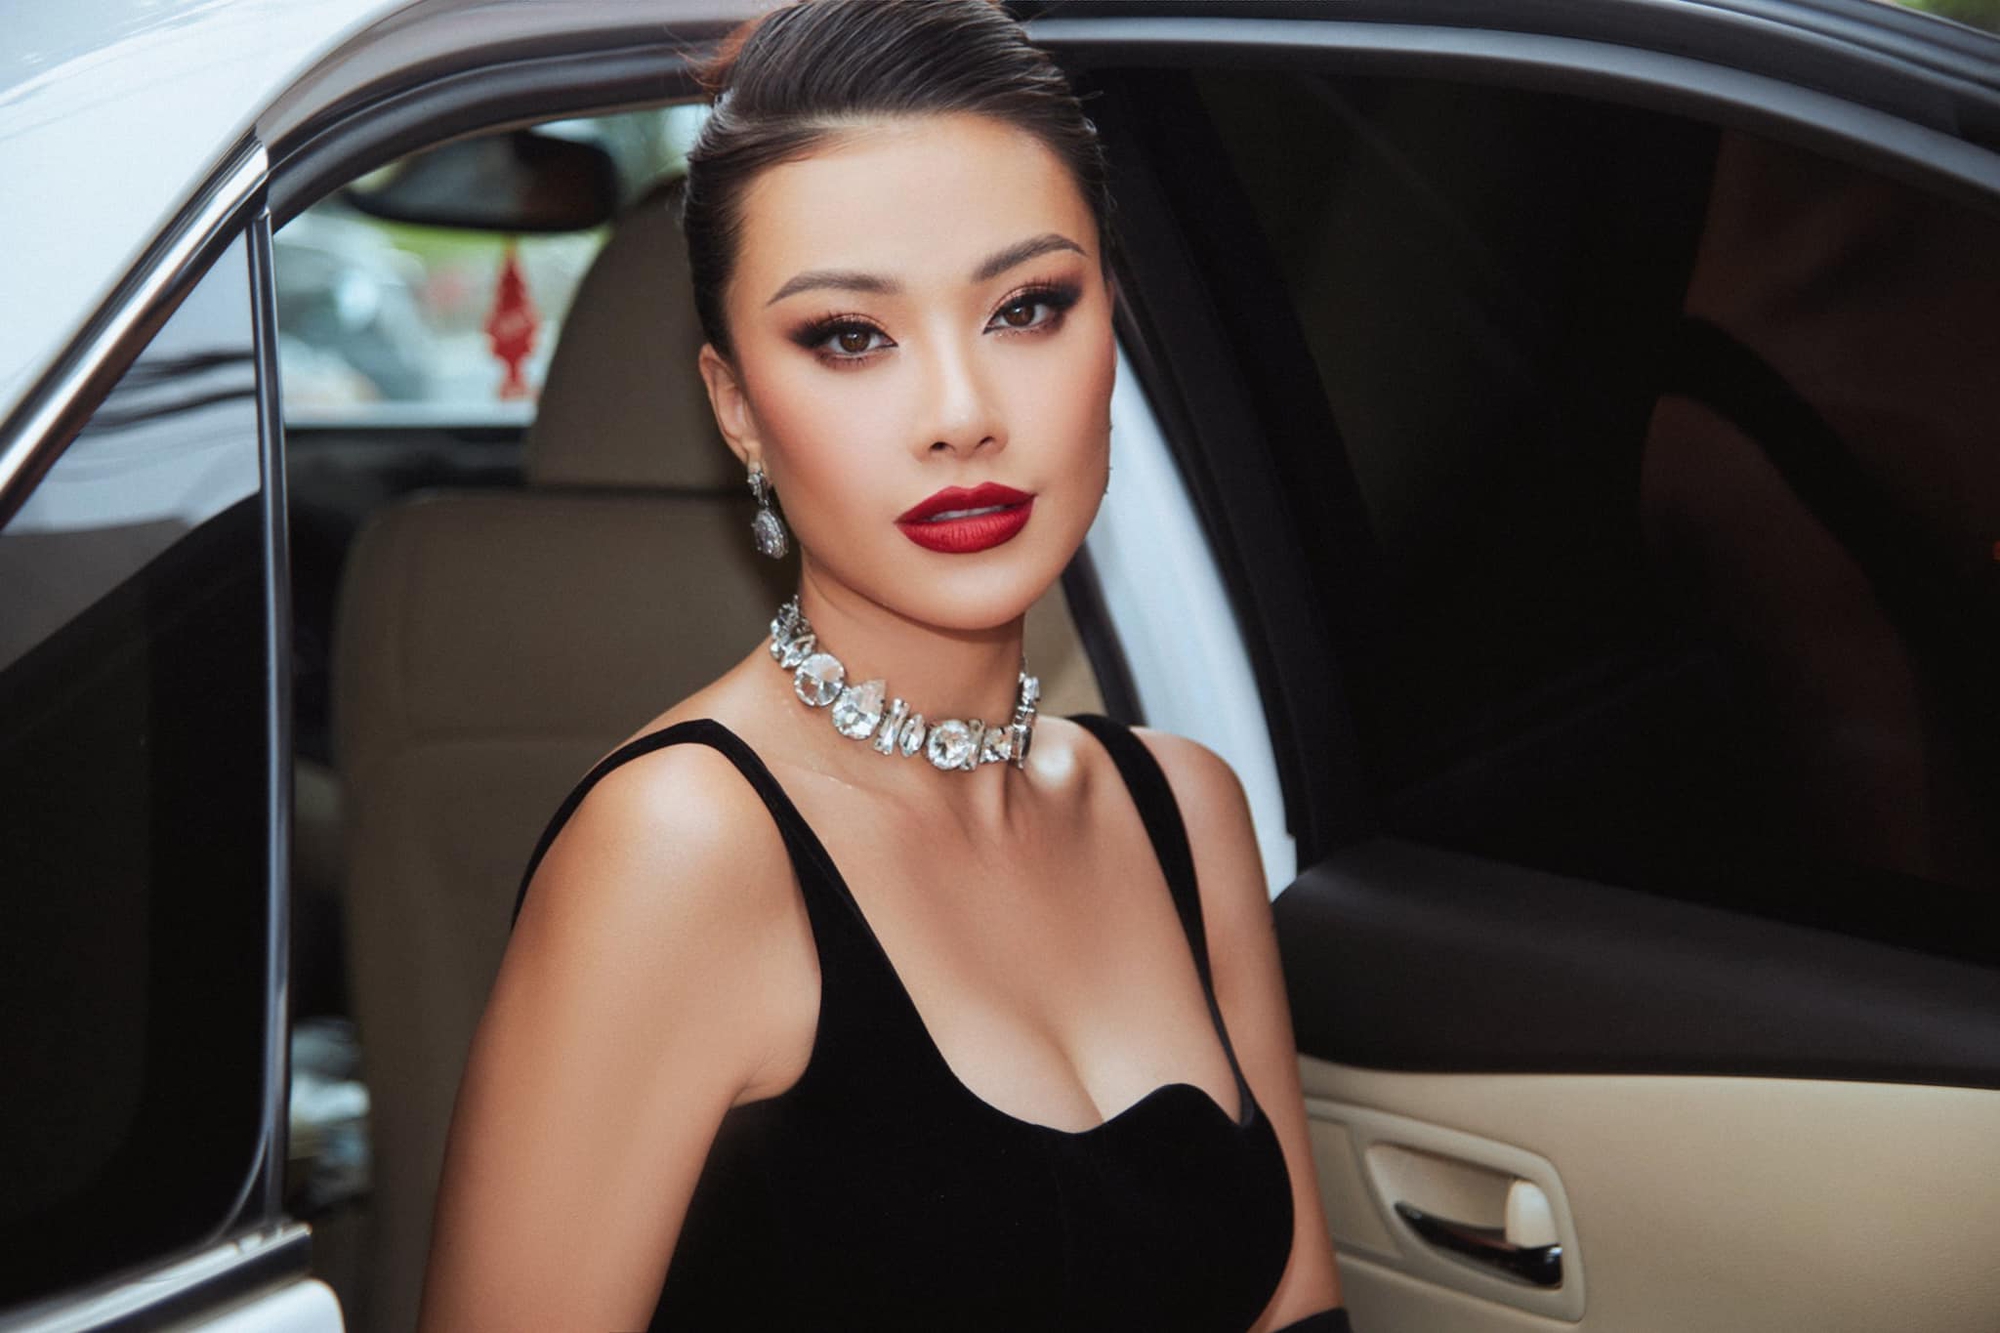 Á hậu Kim Duyên 3 năm sau Hoa hậu Hoàn vũ Việt Nam 2019: Đoạt danh hiệu lớn ở quốc tế nhưng vẫn bị nhắc lùm xùm học vấn - Ảnh 2.